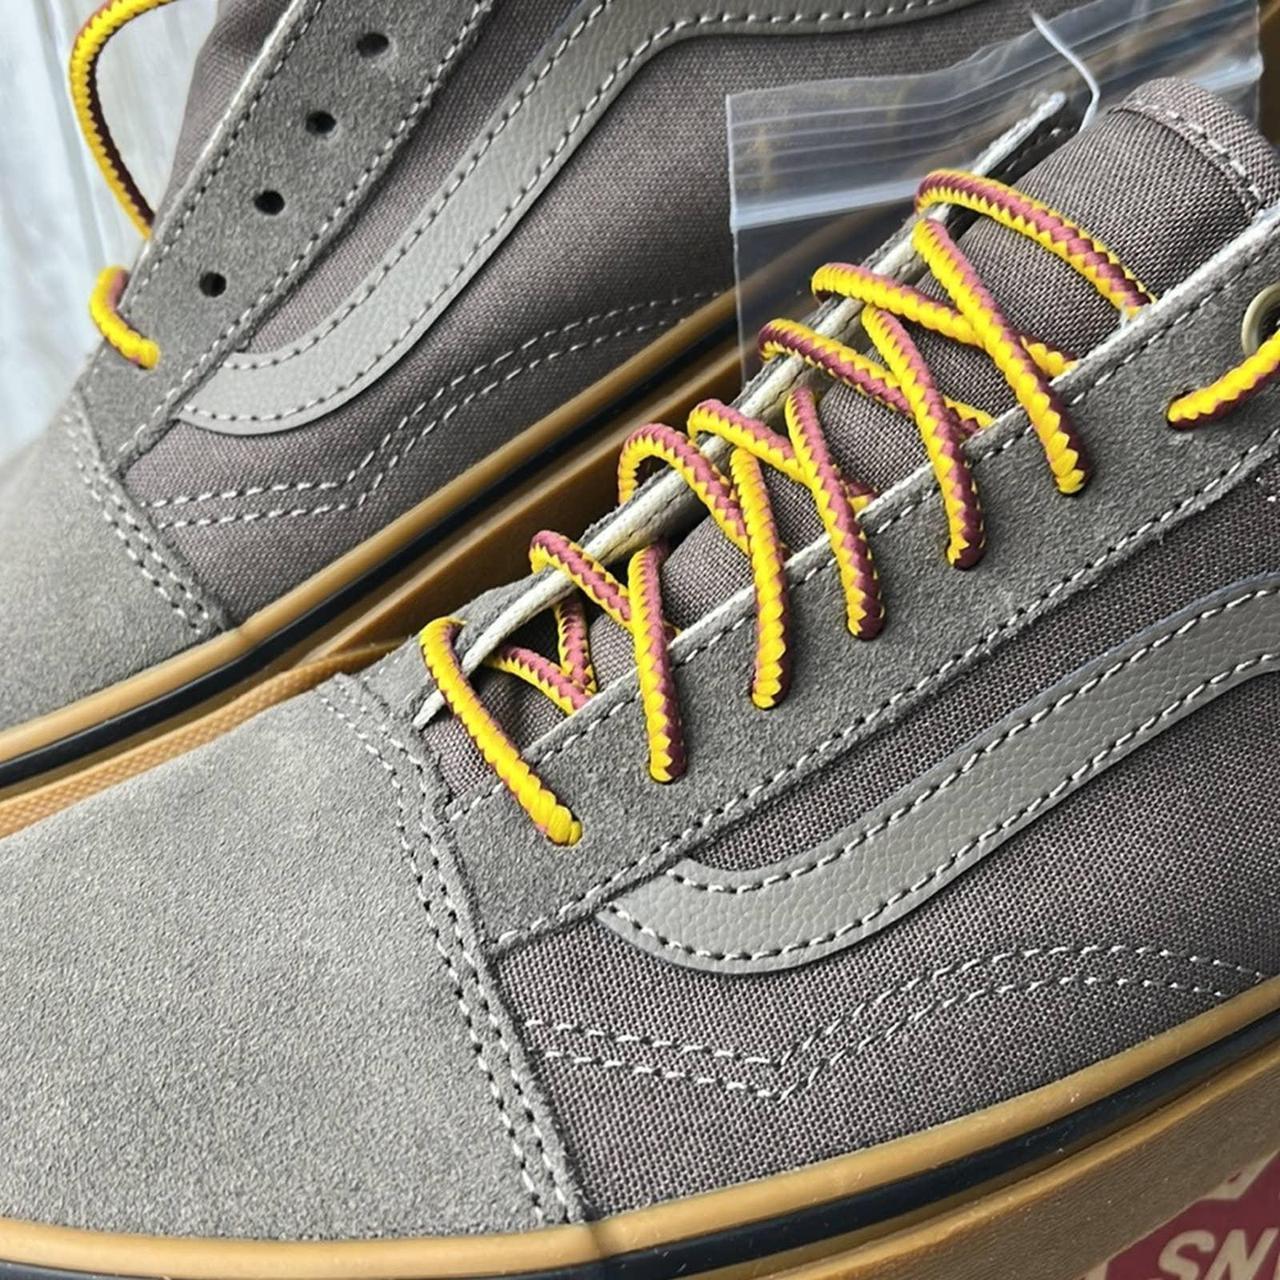 Product Image 2 - Vans Old Skool Gumsole Sneaker

Brand